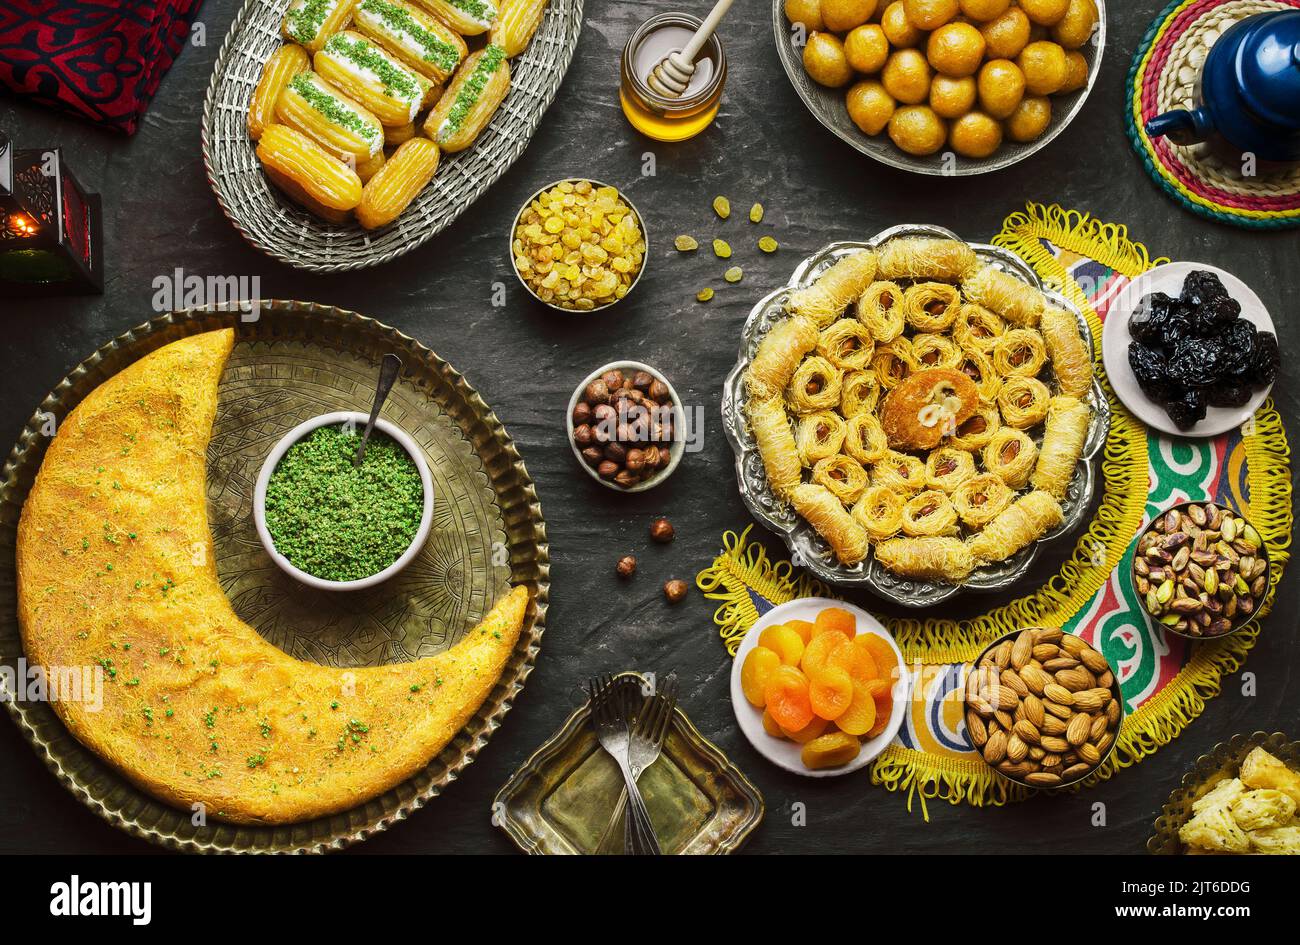 Cuisine arabe : desserts du Moyen-Orient. Une délicieuse collection de desserts traditionnels du Ramadan. Servi avec des noix savoureuses, des fruits secs et du sirop de miel. Banque D'Images